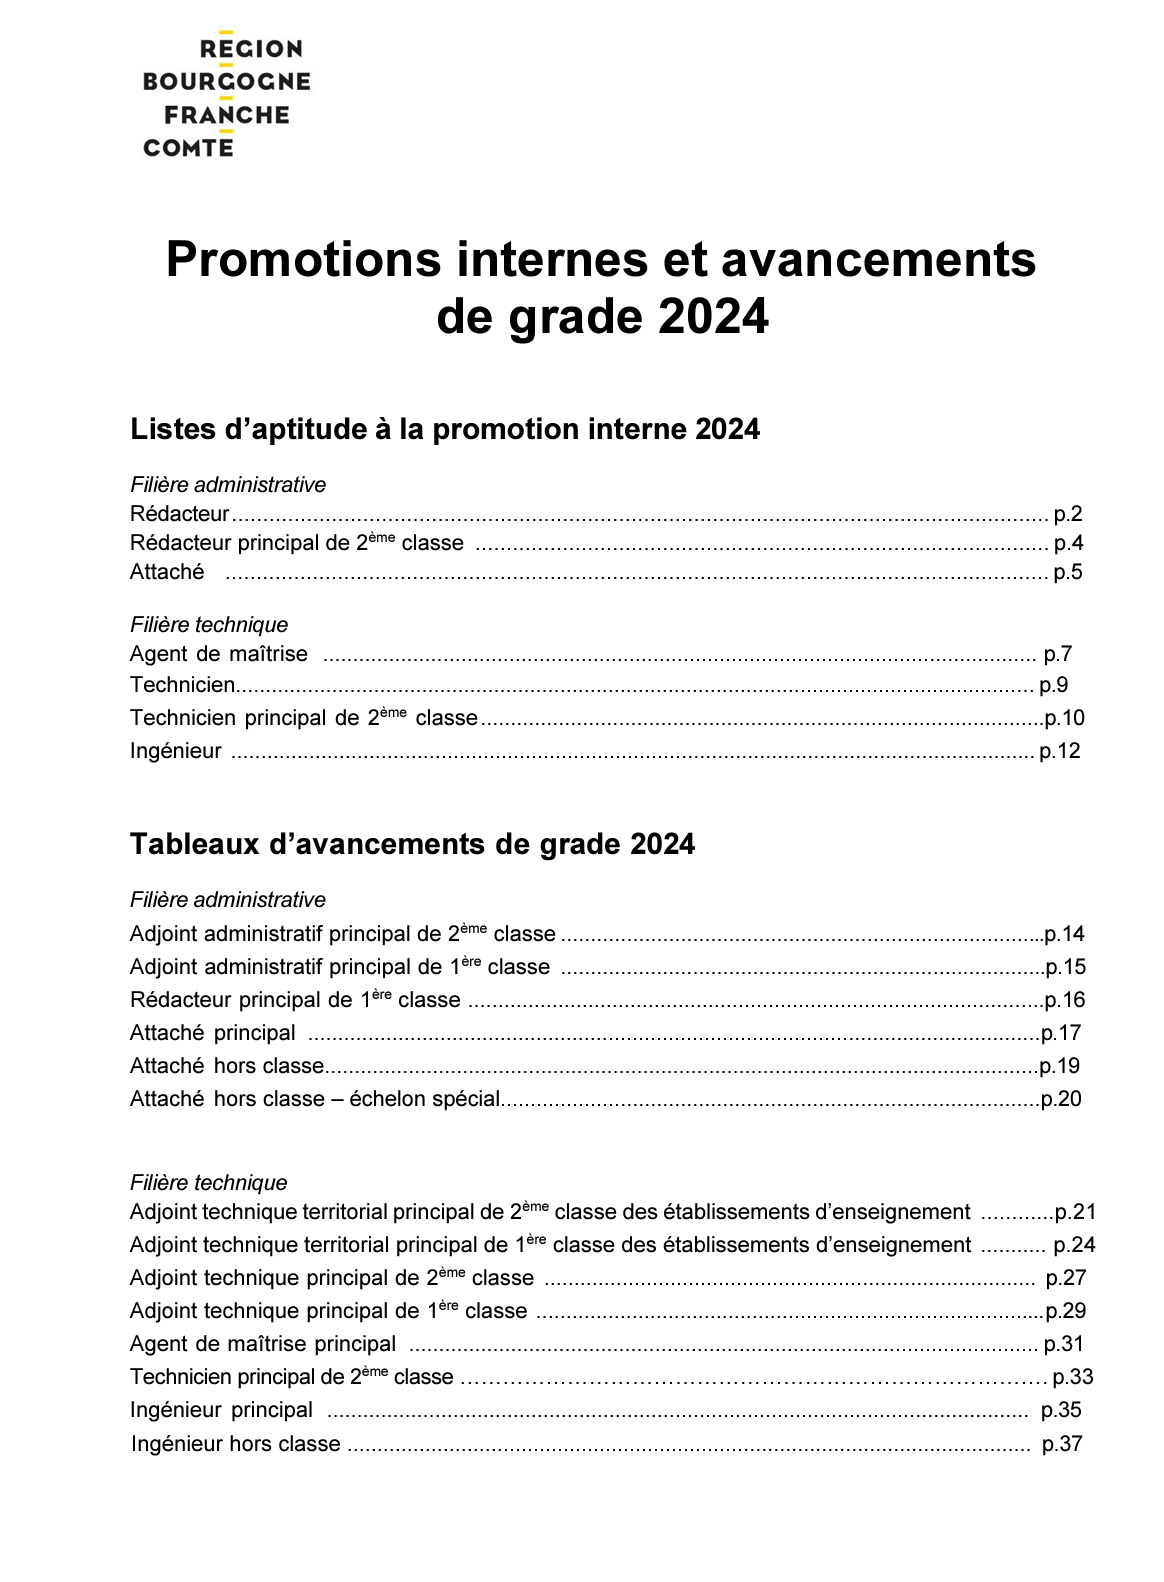 La liste des promotions et avancements de grade pour l’année 2024 a été publiée sur l’Intranet ! 📢